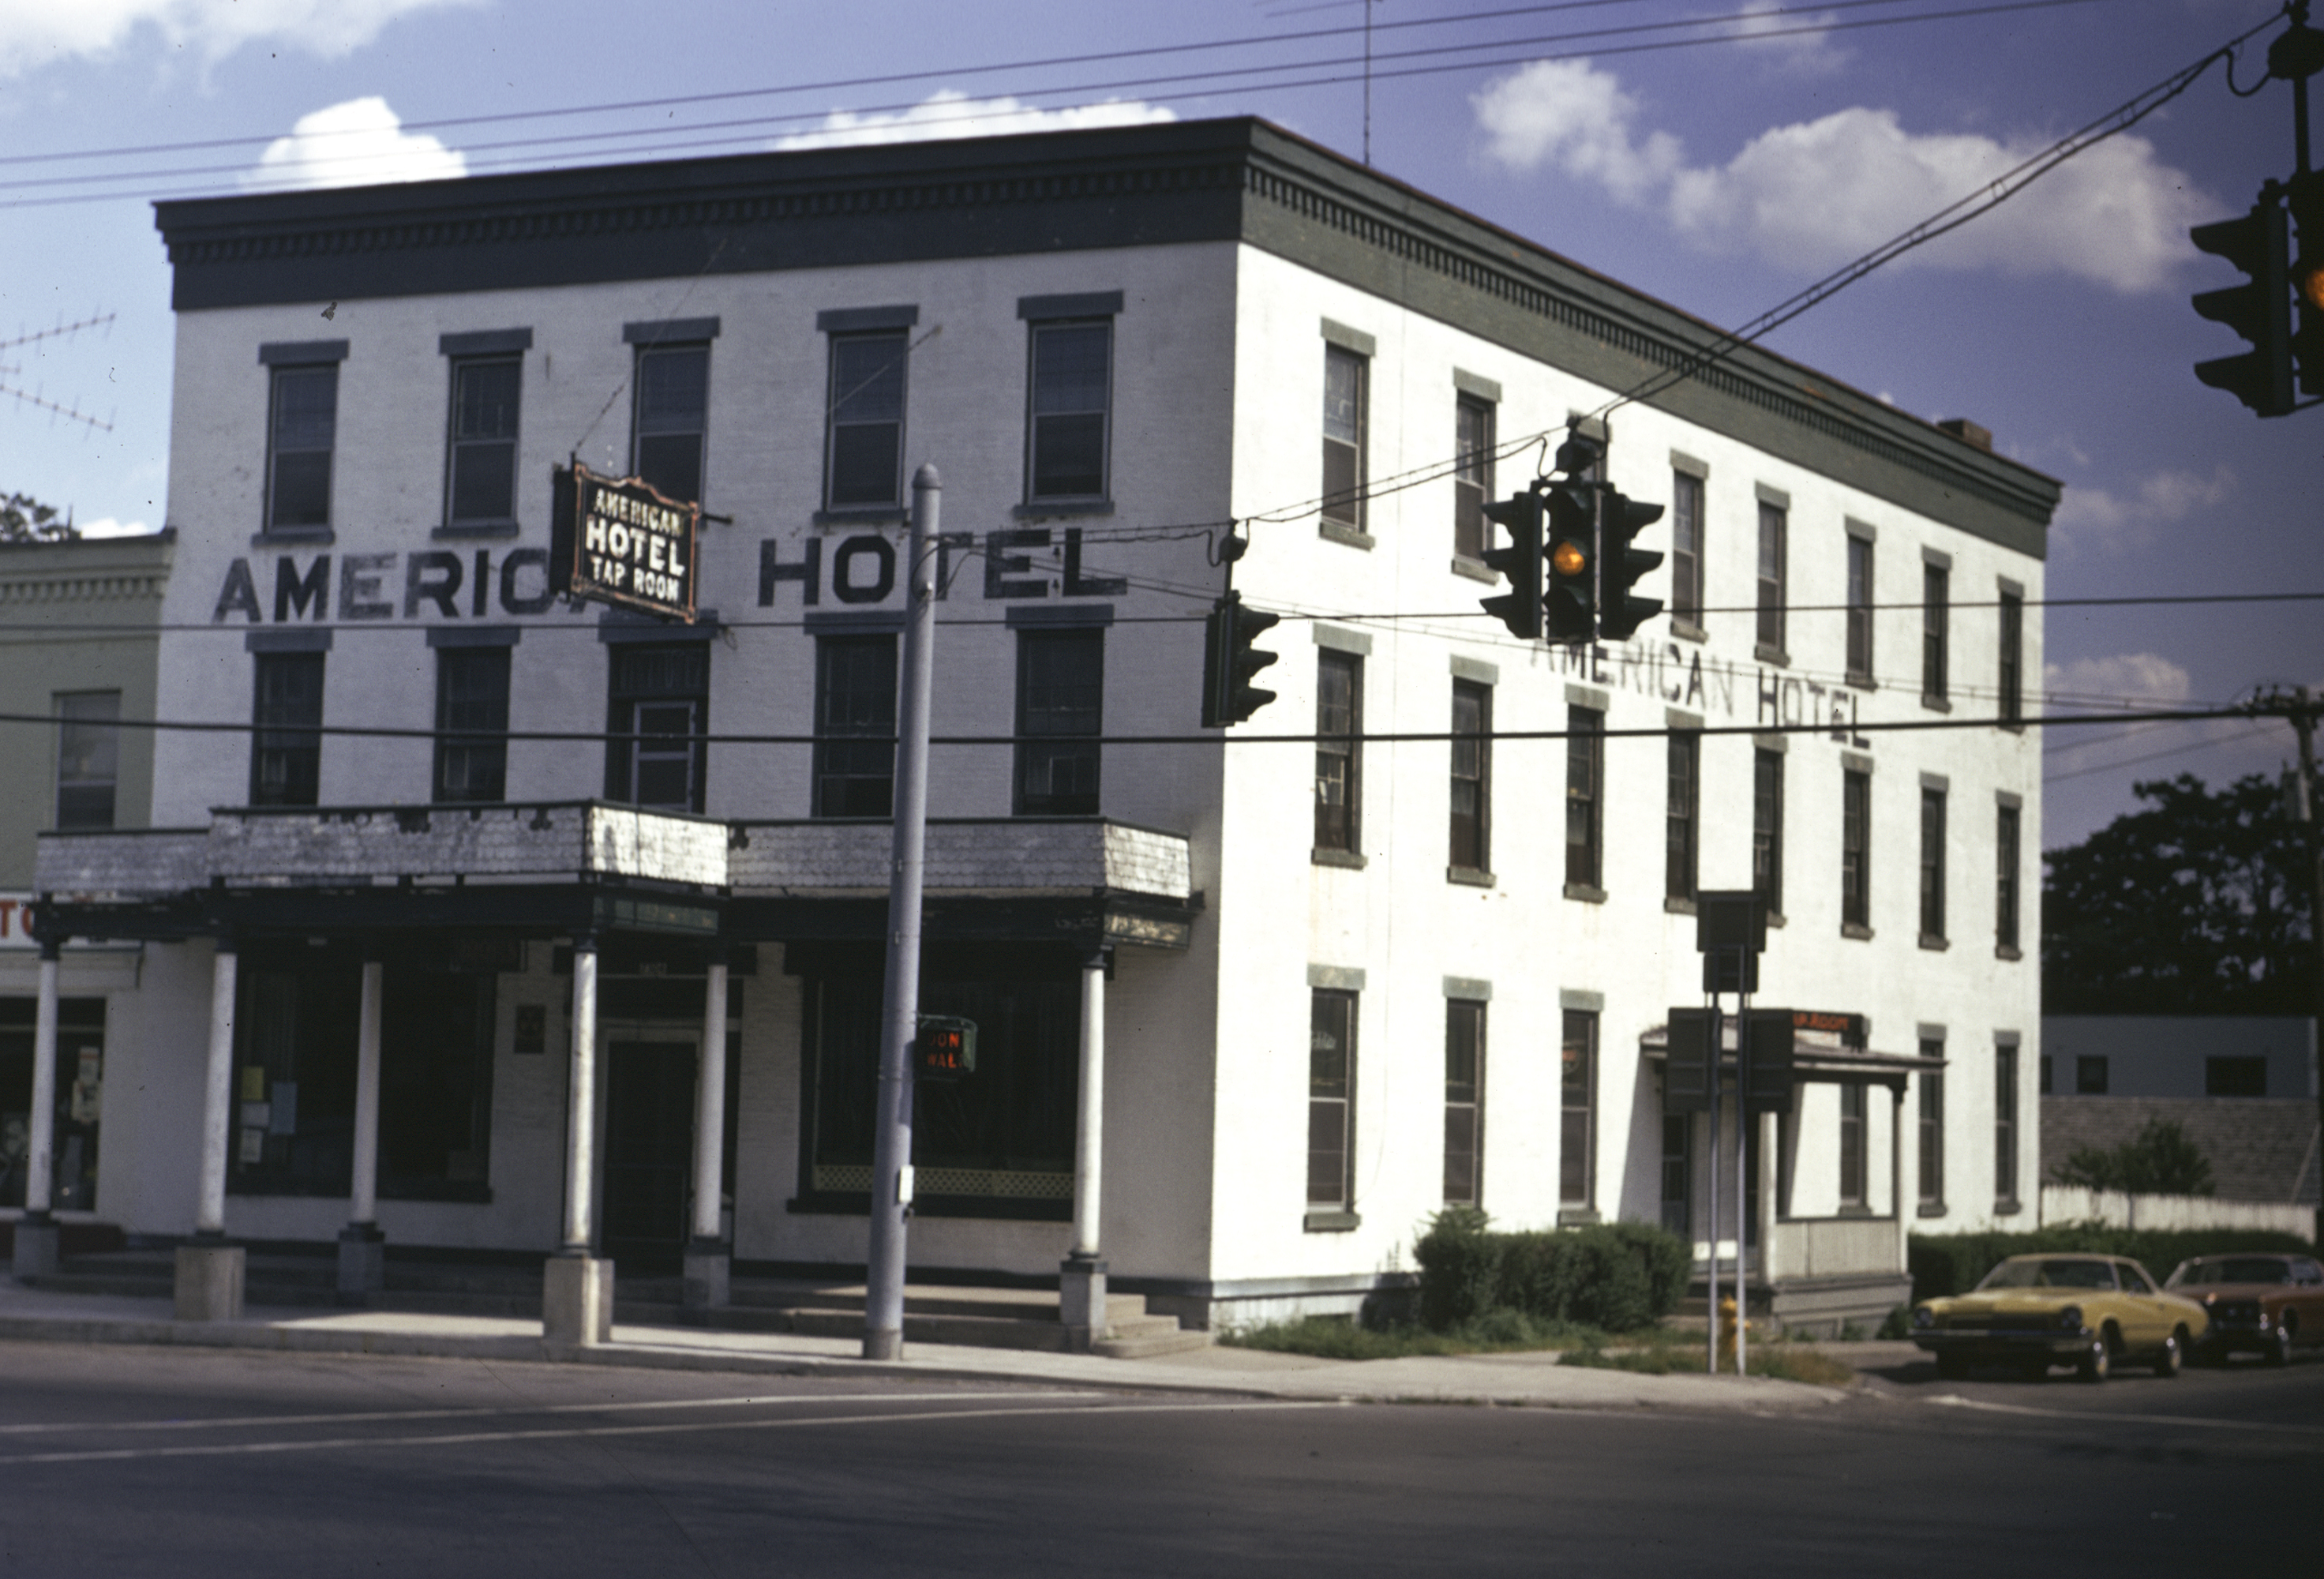 American Hotel Lima NY, 1974